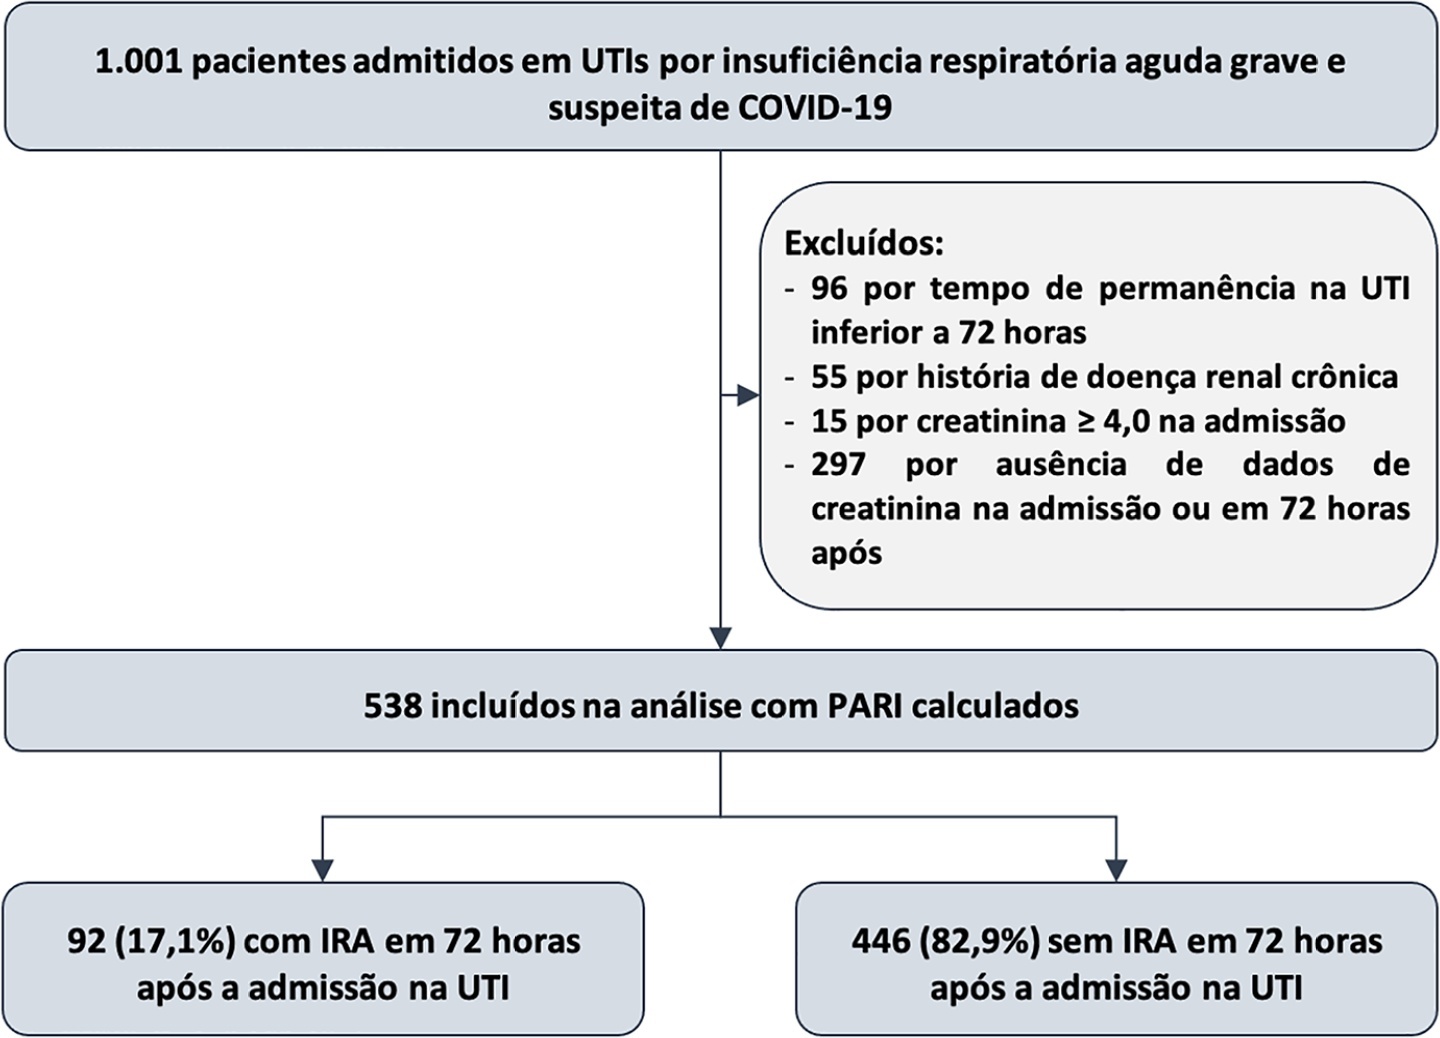 Acurácia do persistent AKI risk index na predição de injúria renal aguda em pacientes admitidos na unidade de terapia intensiva por insuficiência respiratória aguda